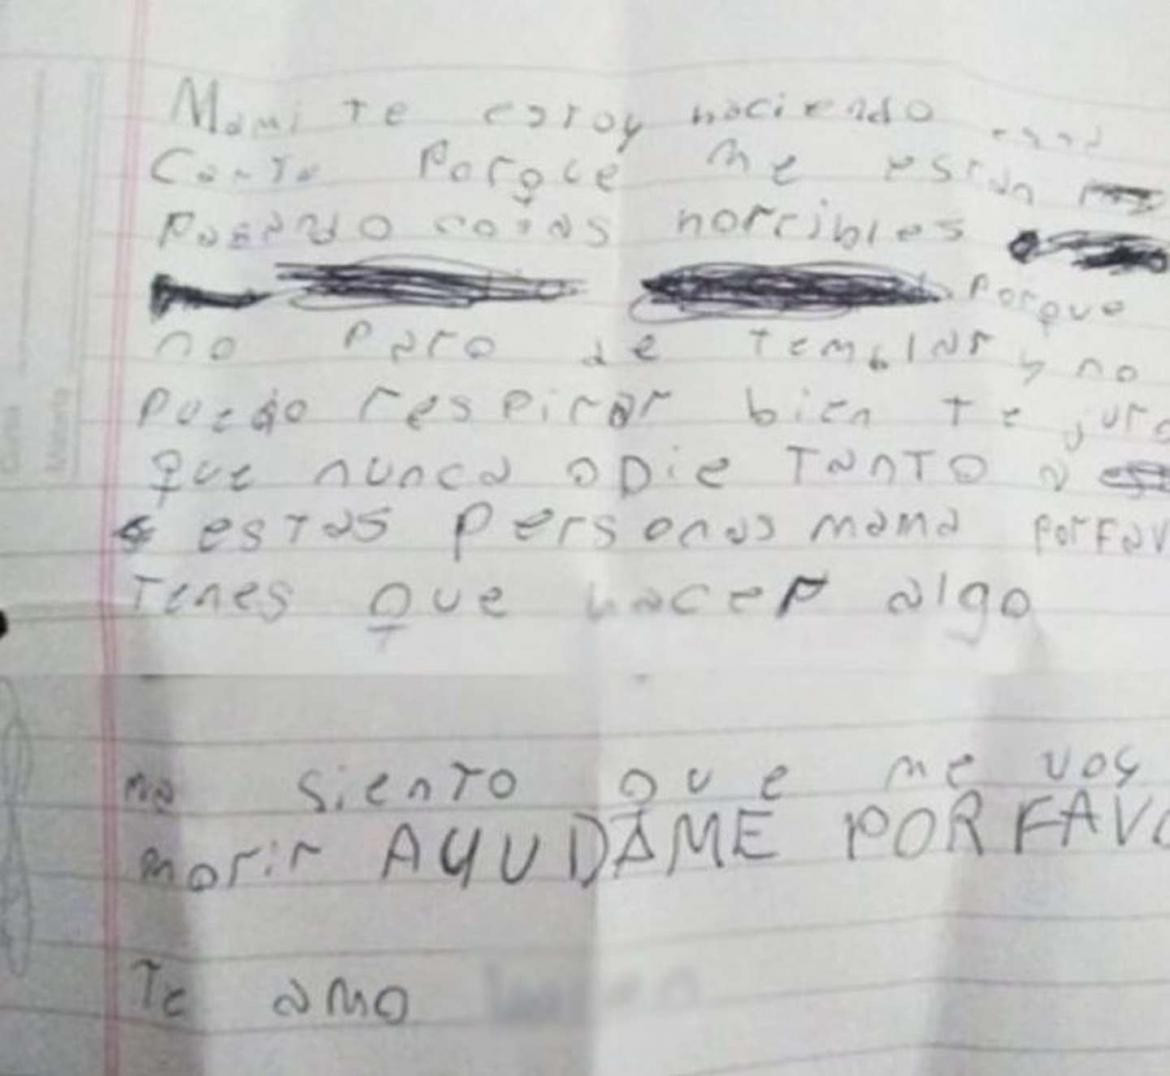 La carta que la nena le escribió a su mamá. Foto: gentileza El Doce